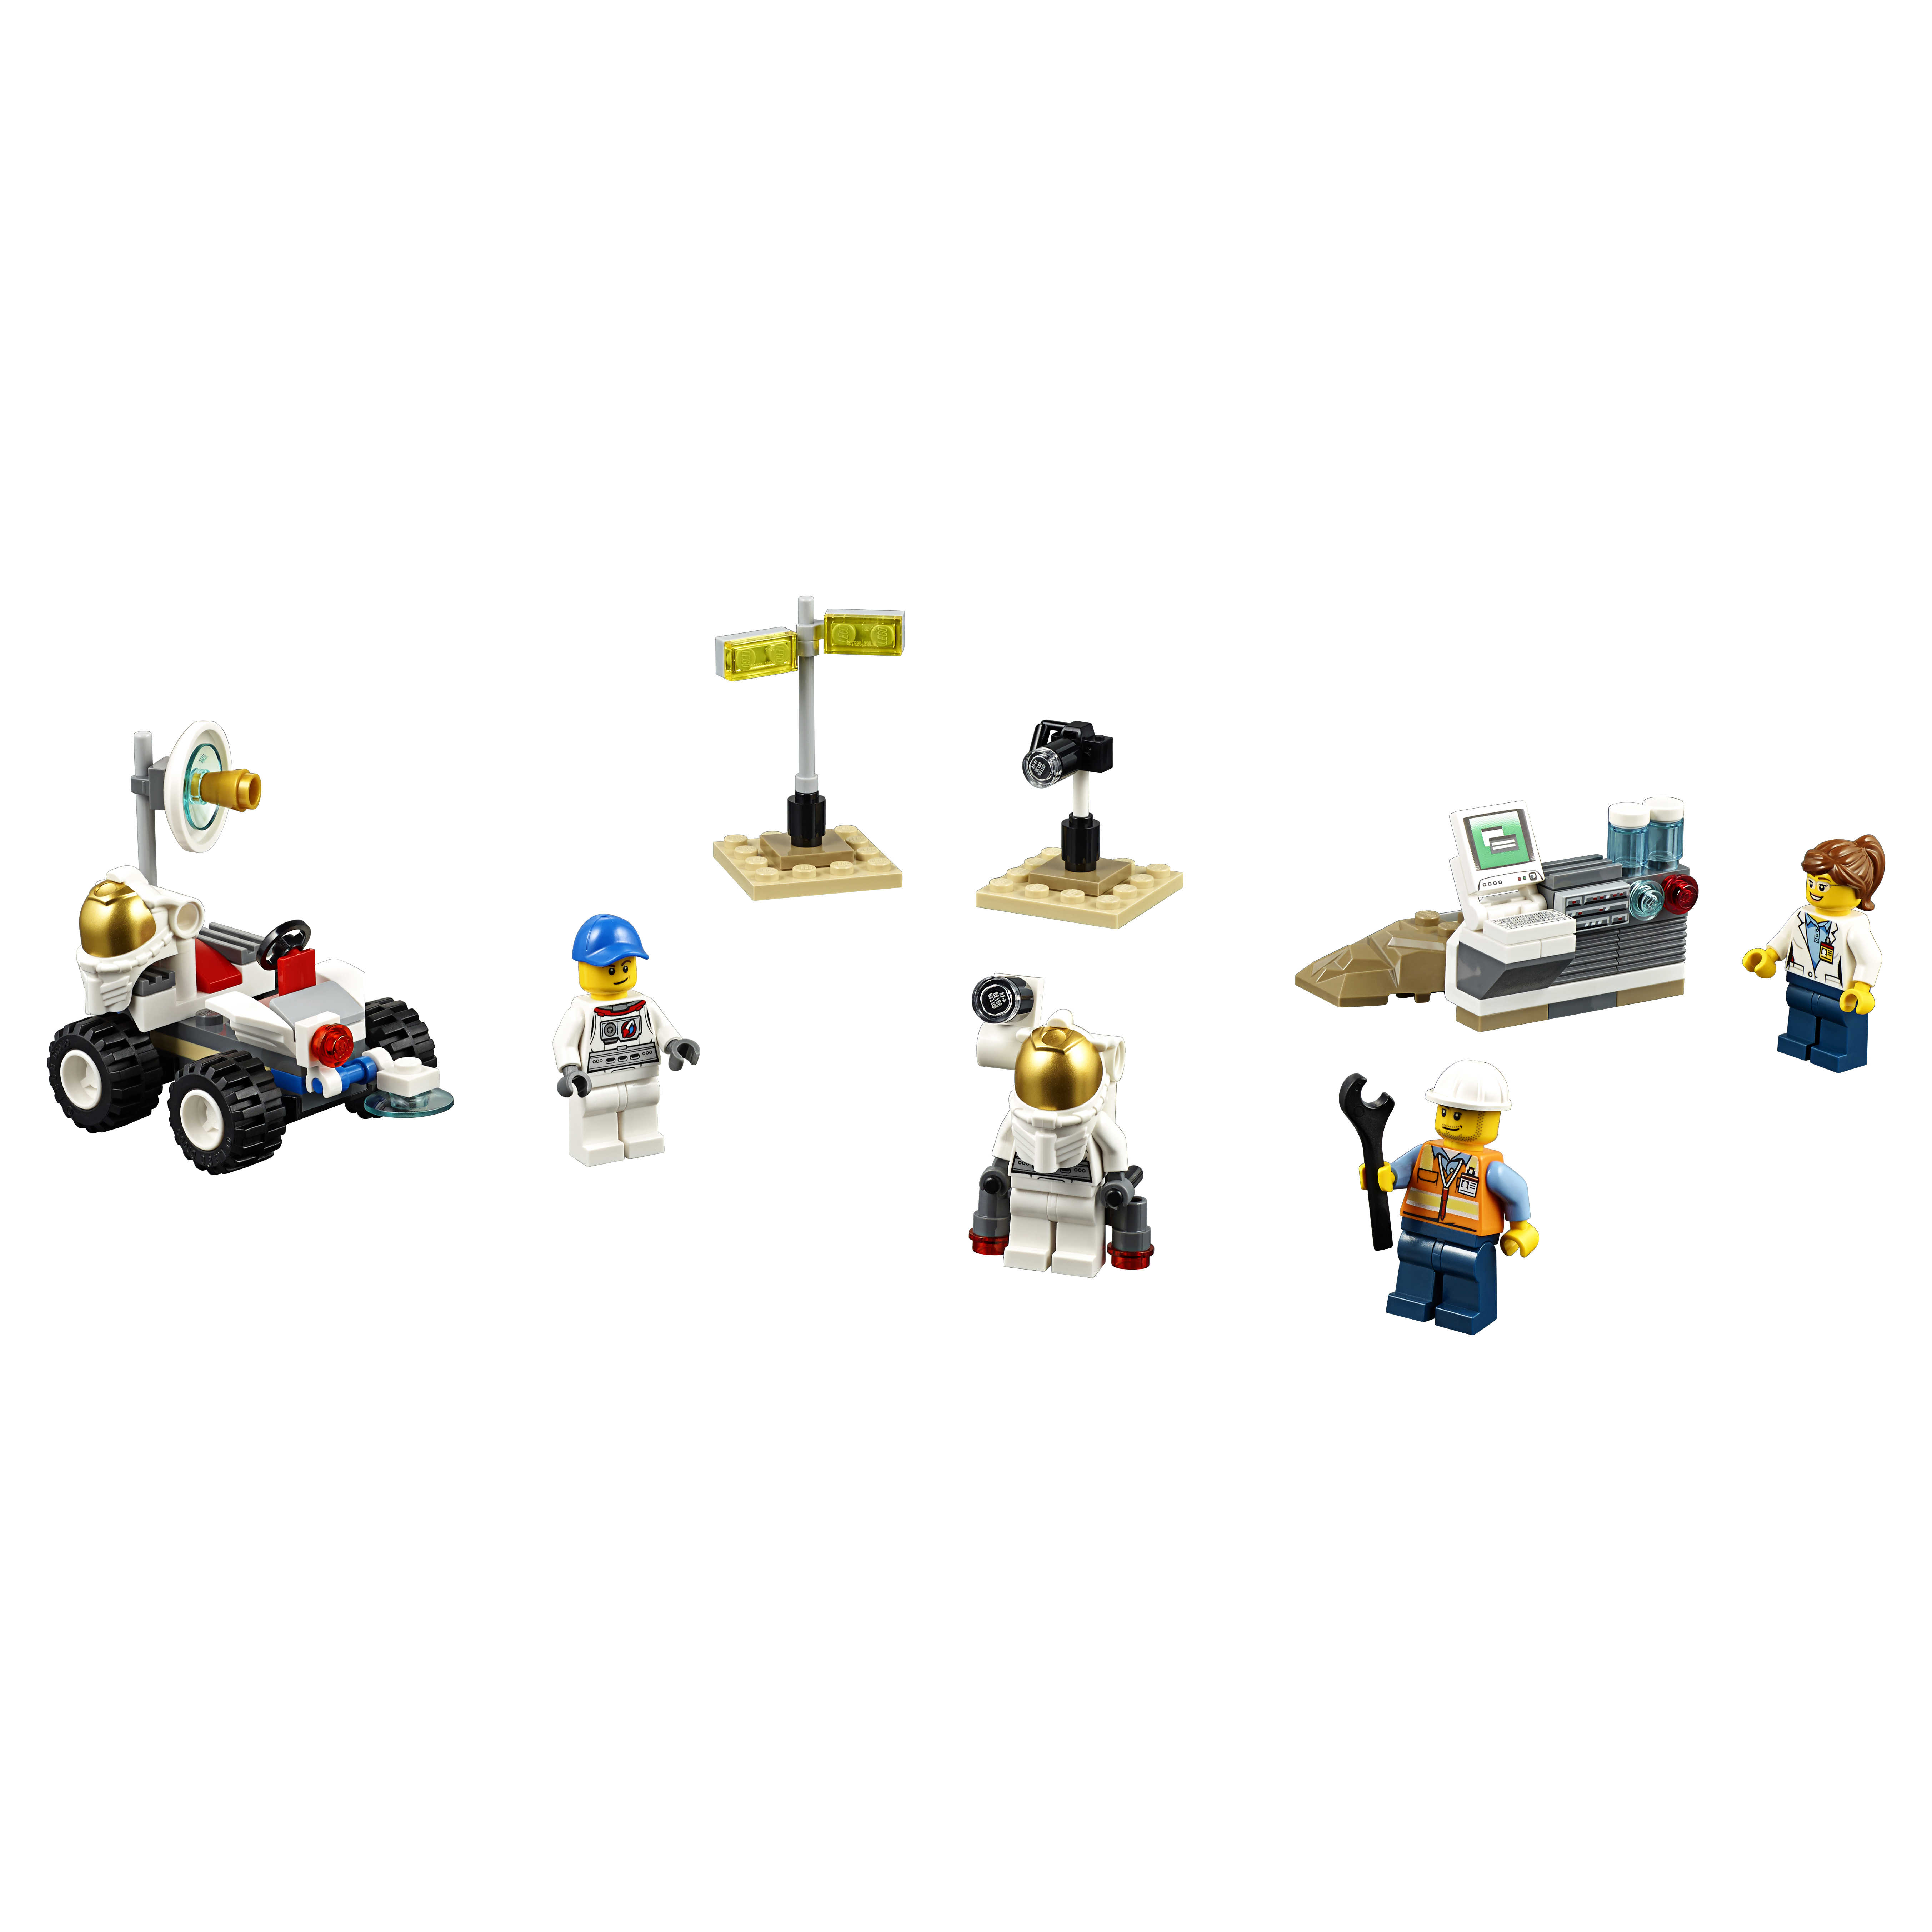 Конструктор LEGO City Space Port Набор для начинающих Космос (60077) конструктор lego city coast guard набор для начинающих береговая охрана 60163